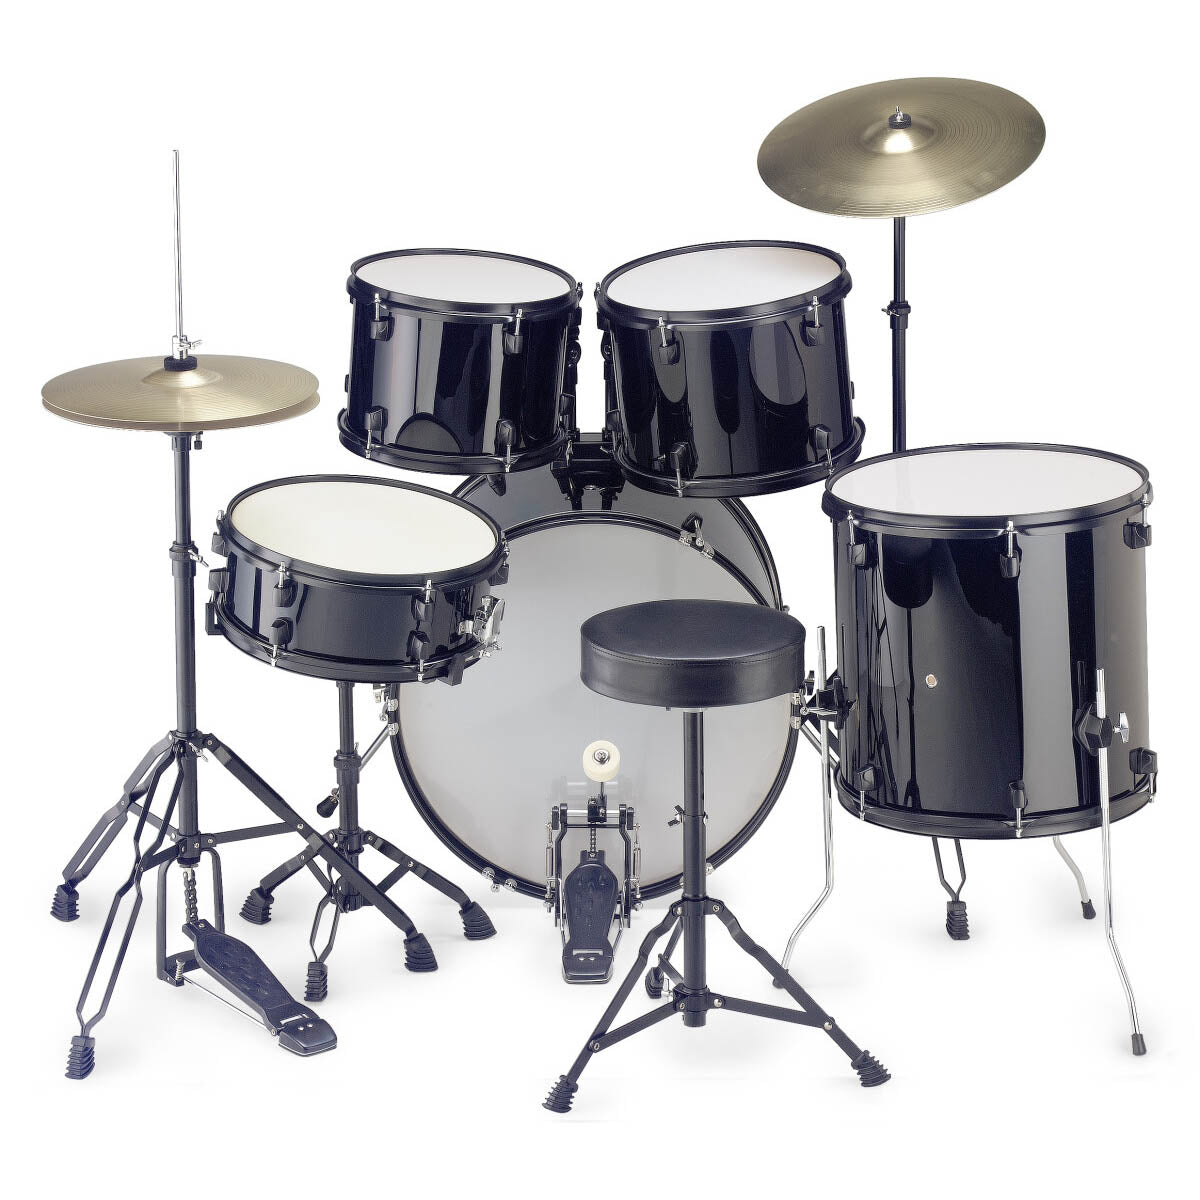 Stagg TIM 22" Rock Drum Kit